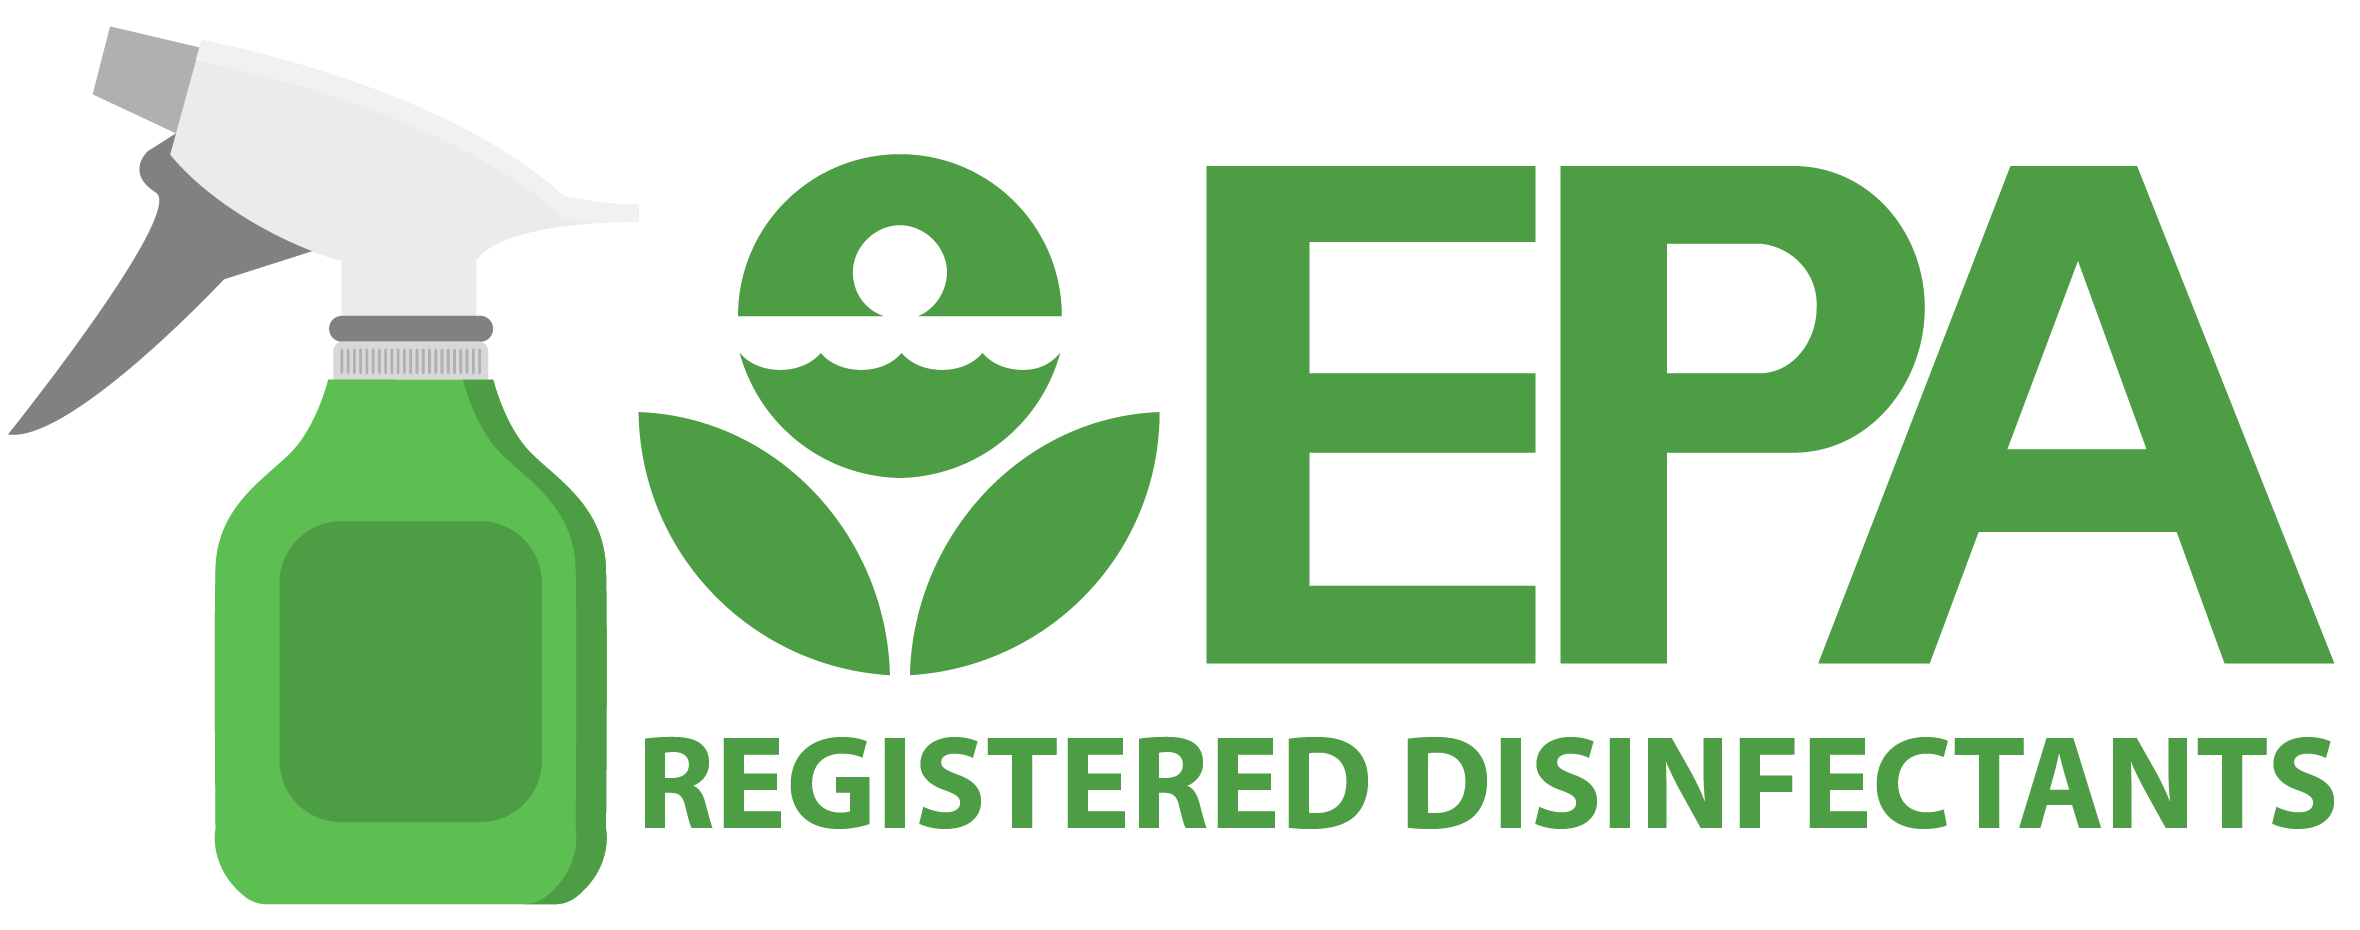 EPA-Registered-Disinfectants-01